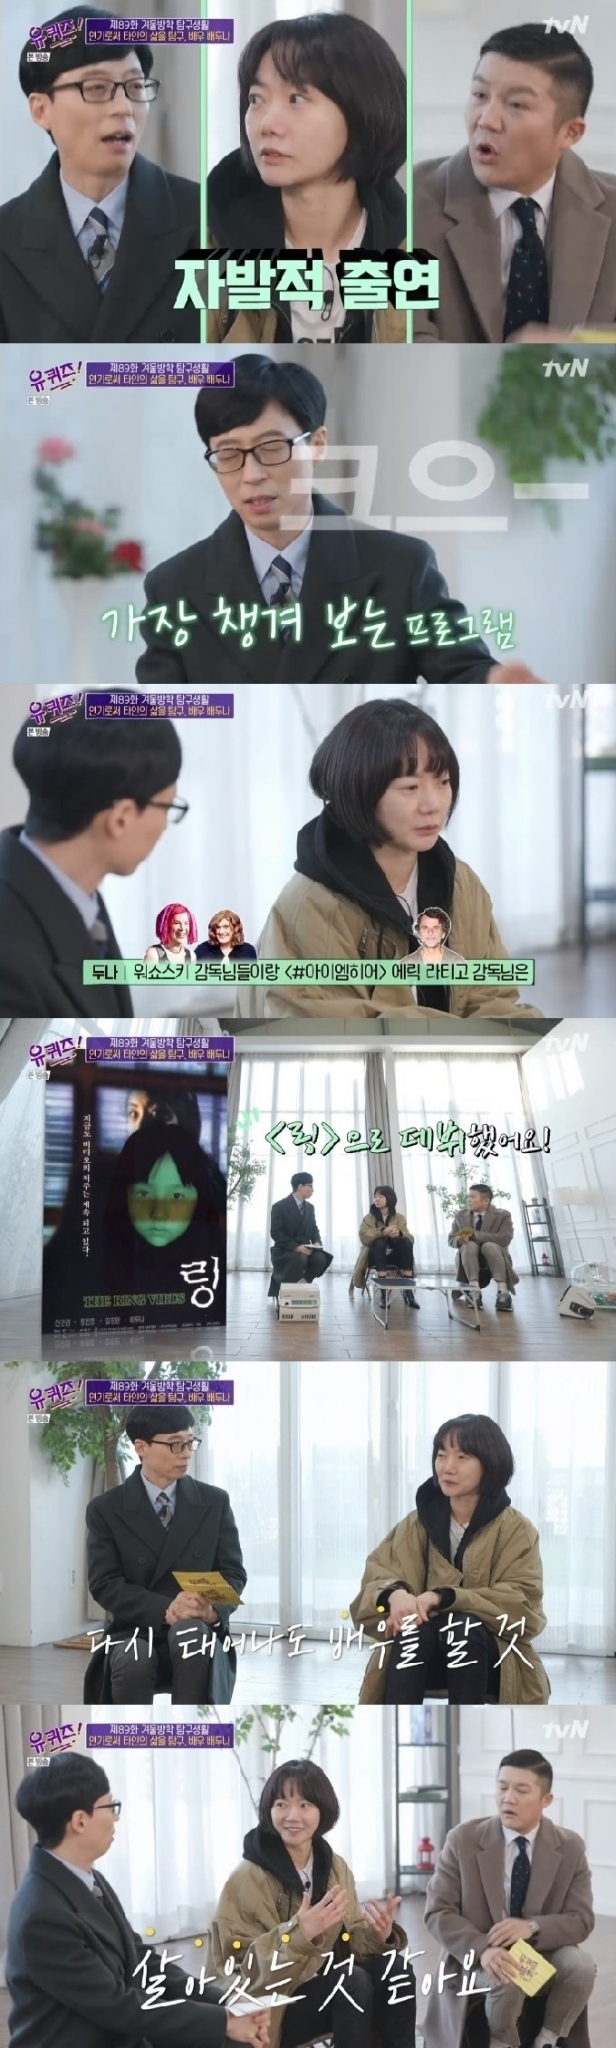 13일 오후 방송된 tvN 예능 프로그램 '유 퀴즈 온 더 블럭'에 배두나가 출연해 자신의 일과 삶에 대한 열정을 전했다. /사진=tvN '유퀴즈 온 더 블럭' 캡처
